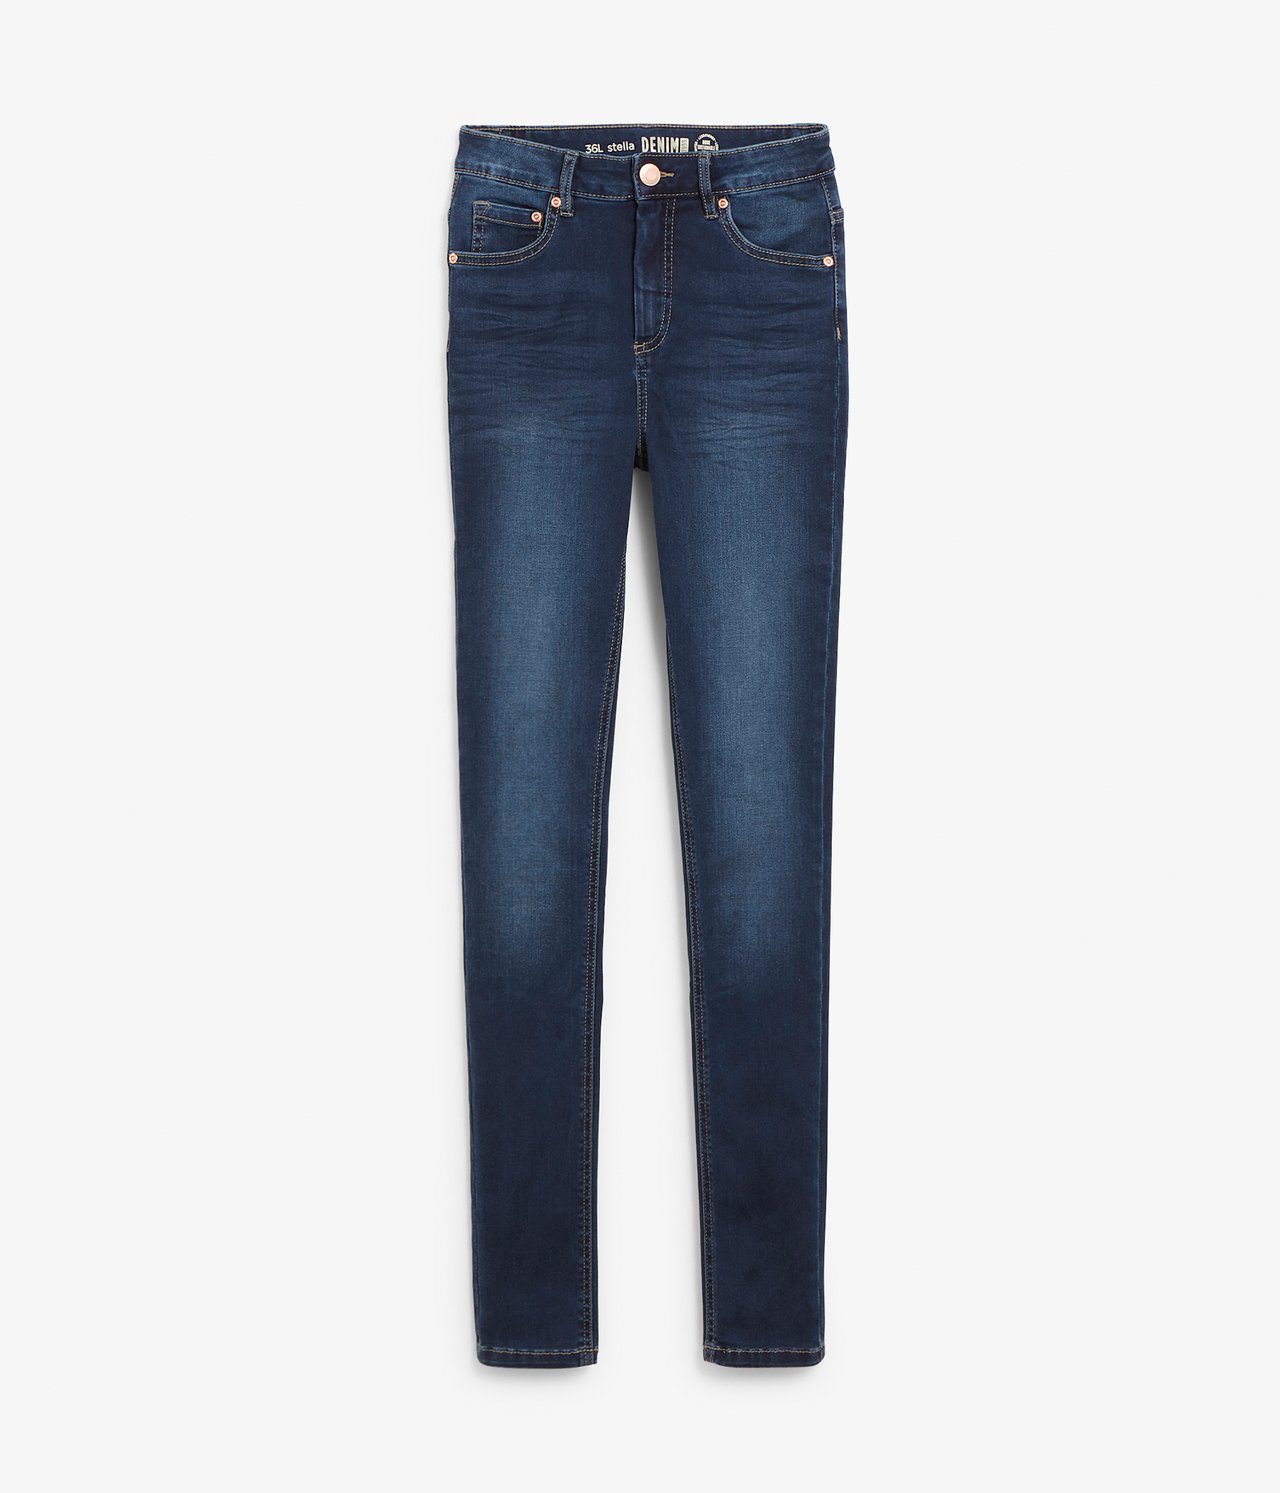 Super slim jeans extra long leg - Tumma denimi - 6